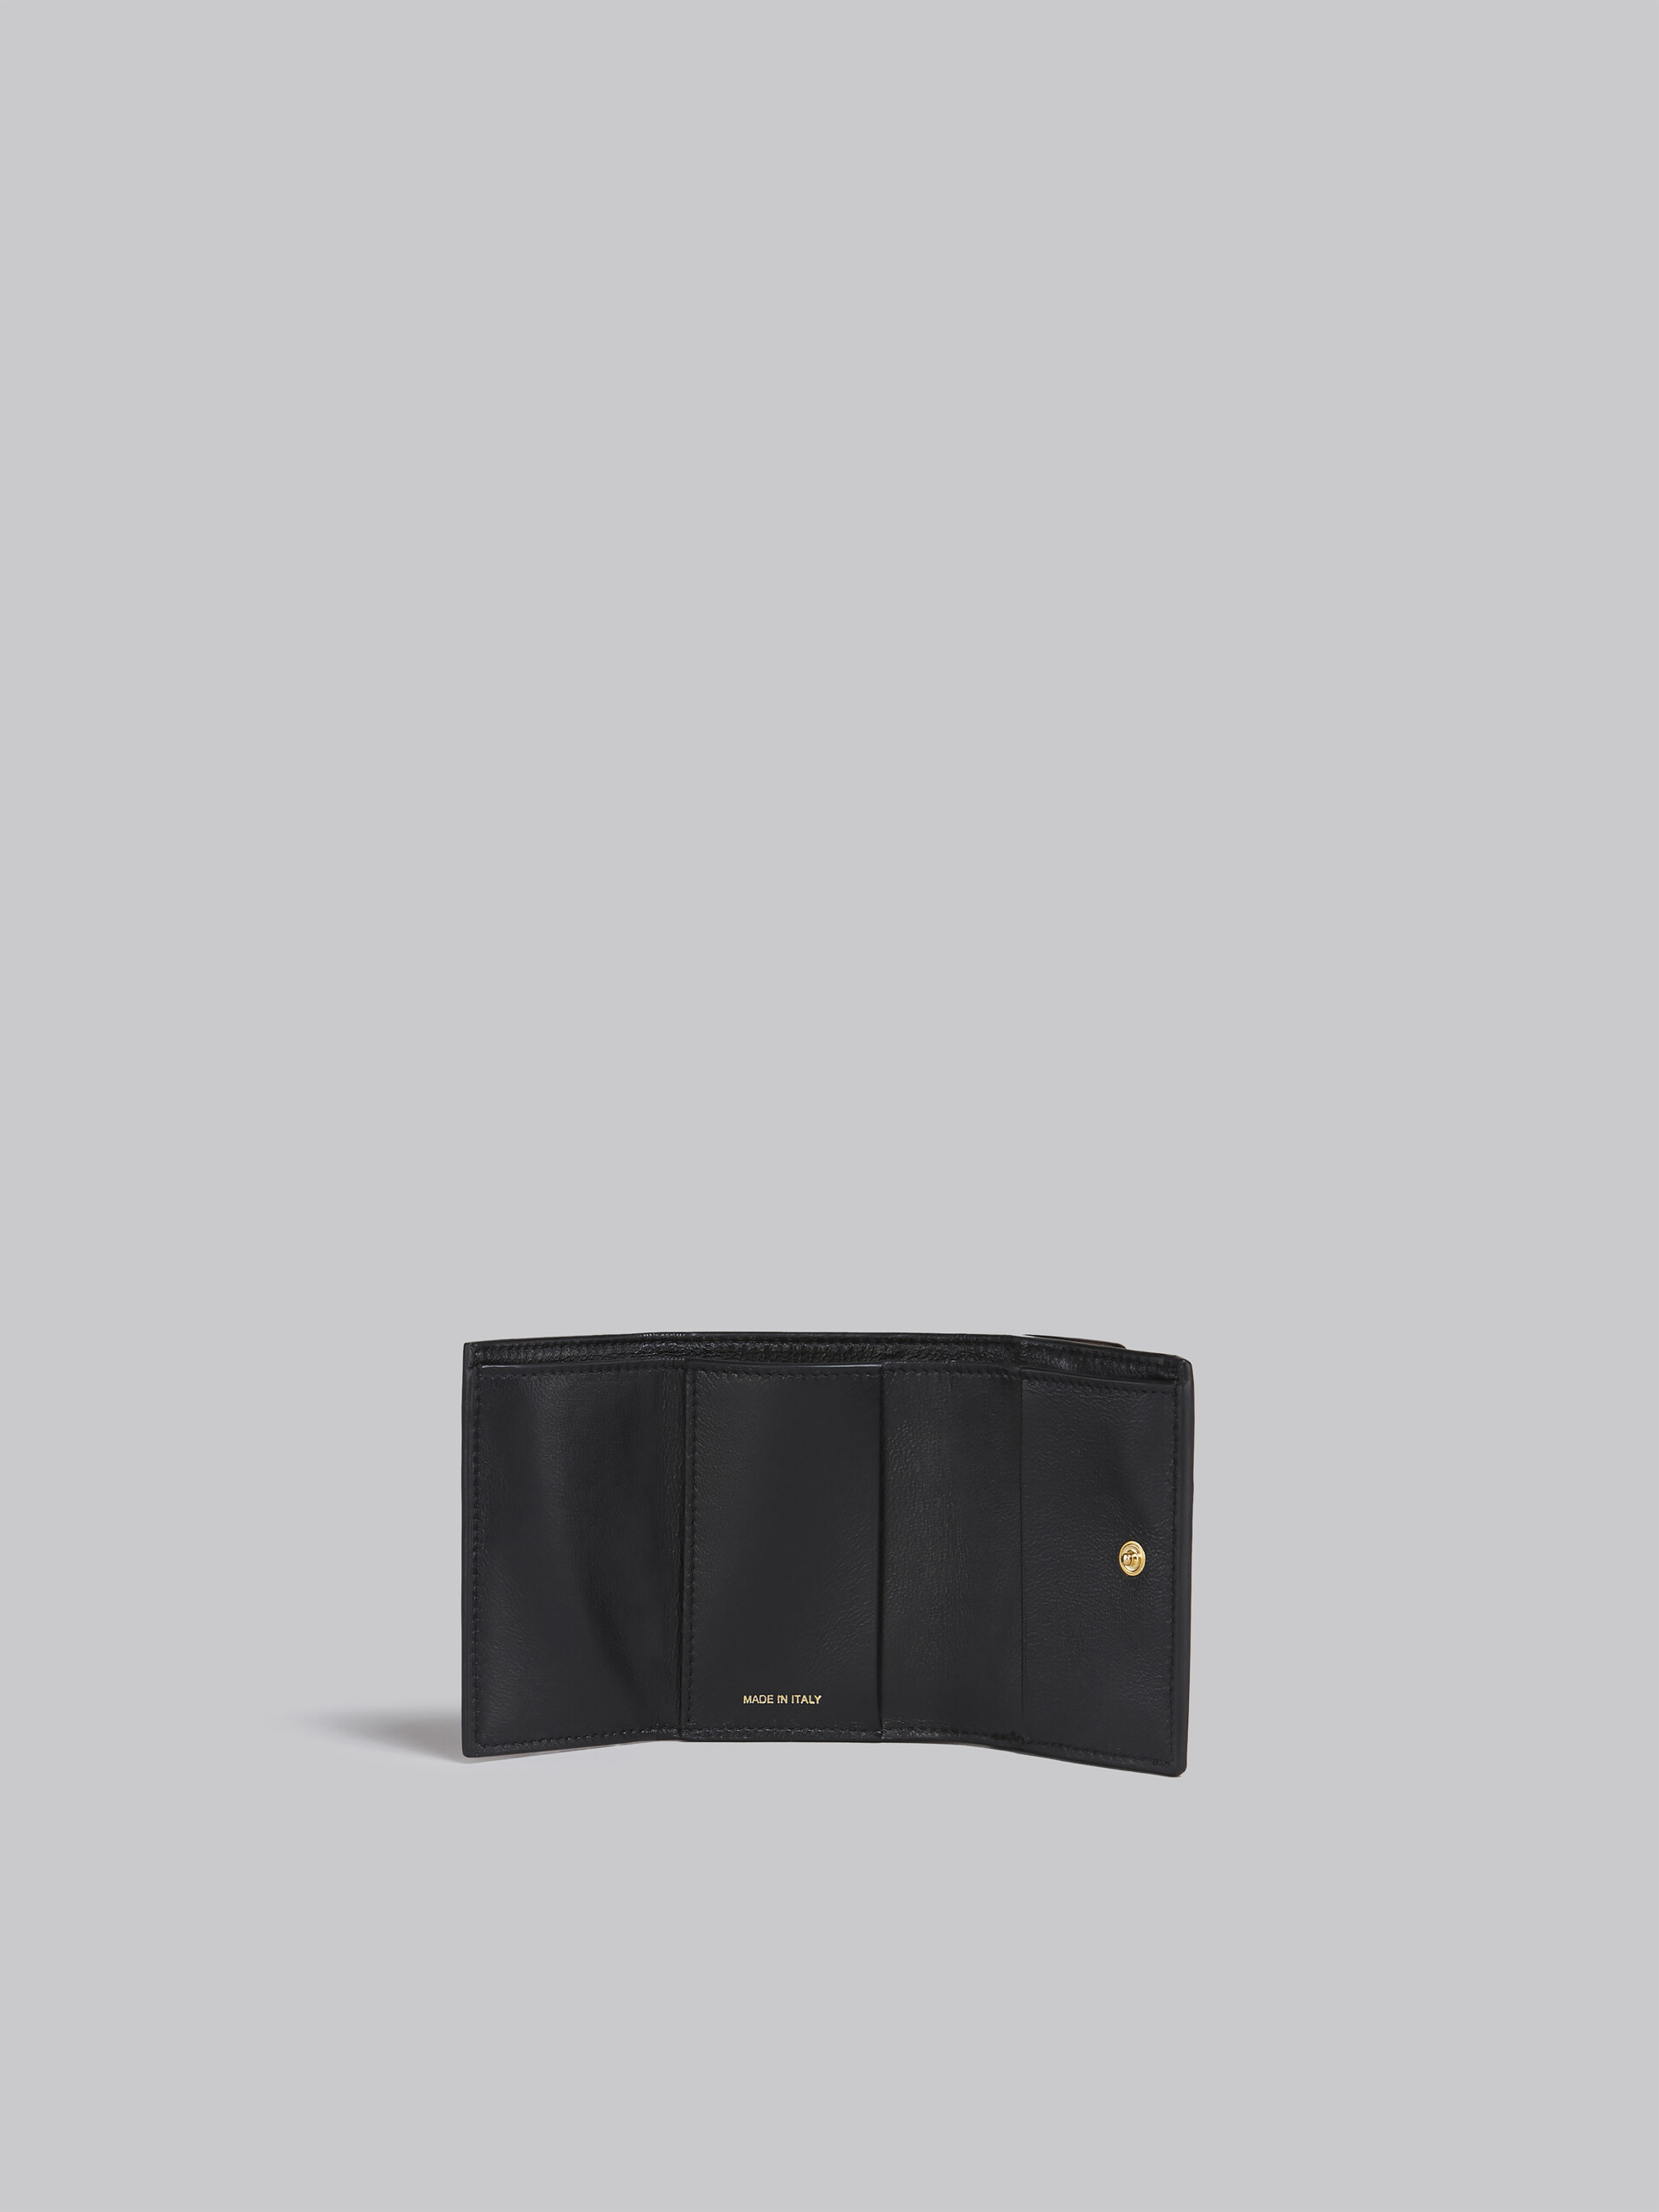 Dreifach faltbare Brieftasche aus braun-pinkem und burgunderrotem Leder - Brieftaschen - Image 2